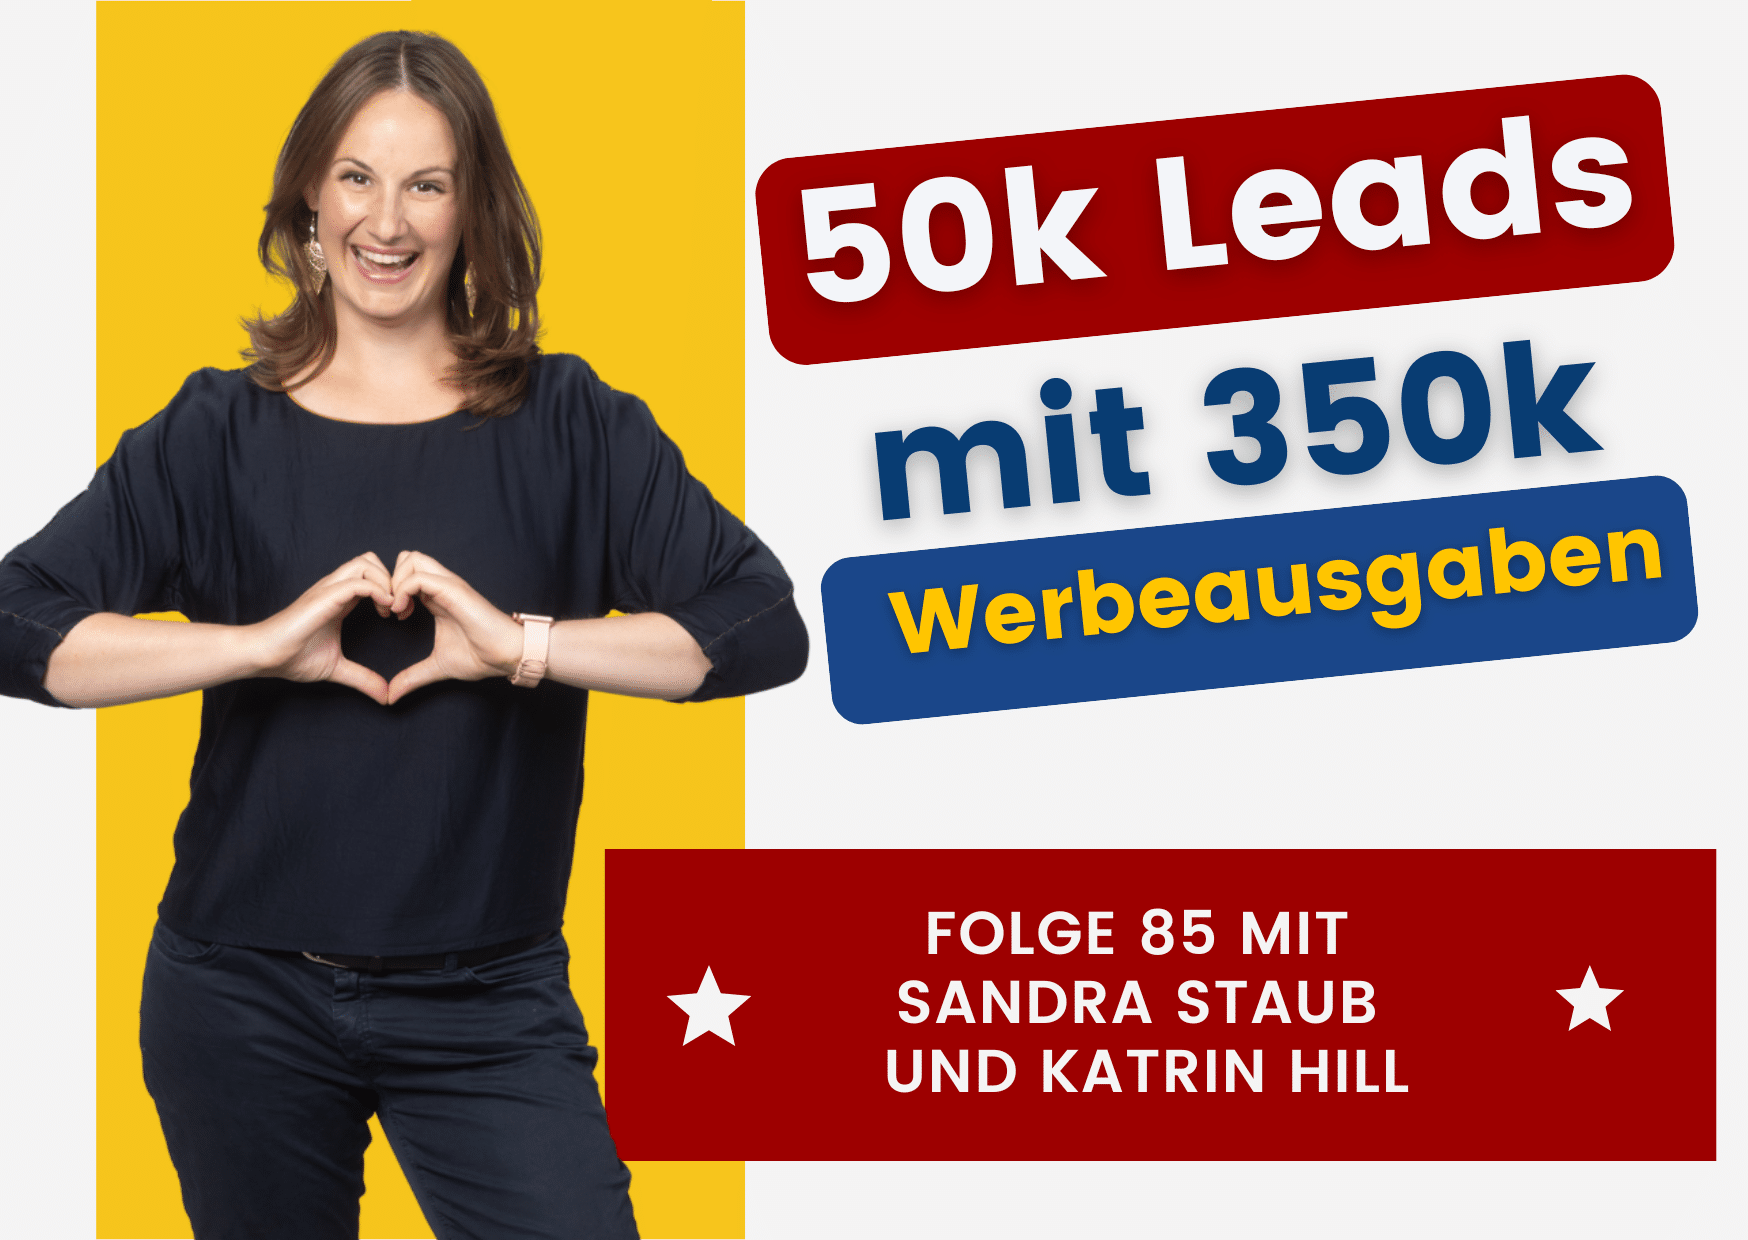 50k Leads mit 350k Werbeausgaben | Interview mit Katrin Hill